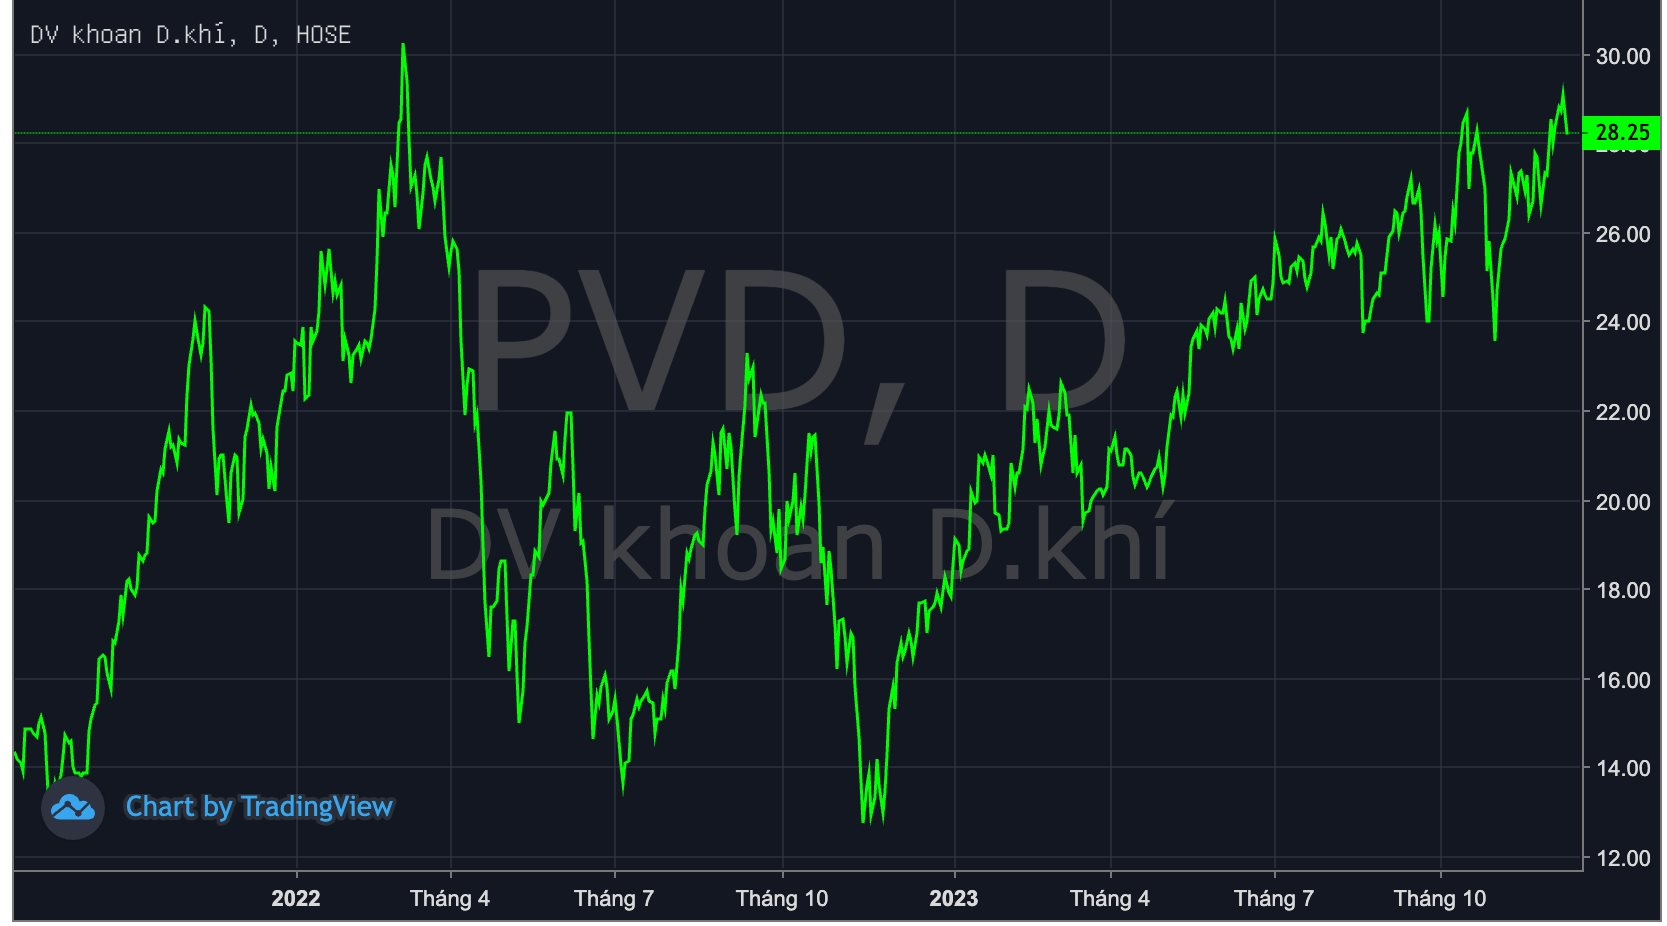 Giá cho thuê giàn khoan neo cao kỷ lục, PVD được dự báo lãi nghìn tỷ trong năm 2024, cổ phiếu "lầm lũi" lên đỉnh - Ảnh 1.